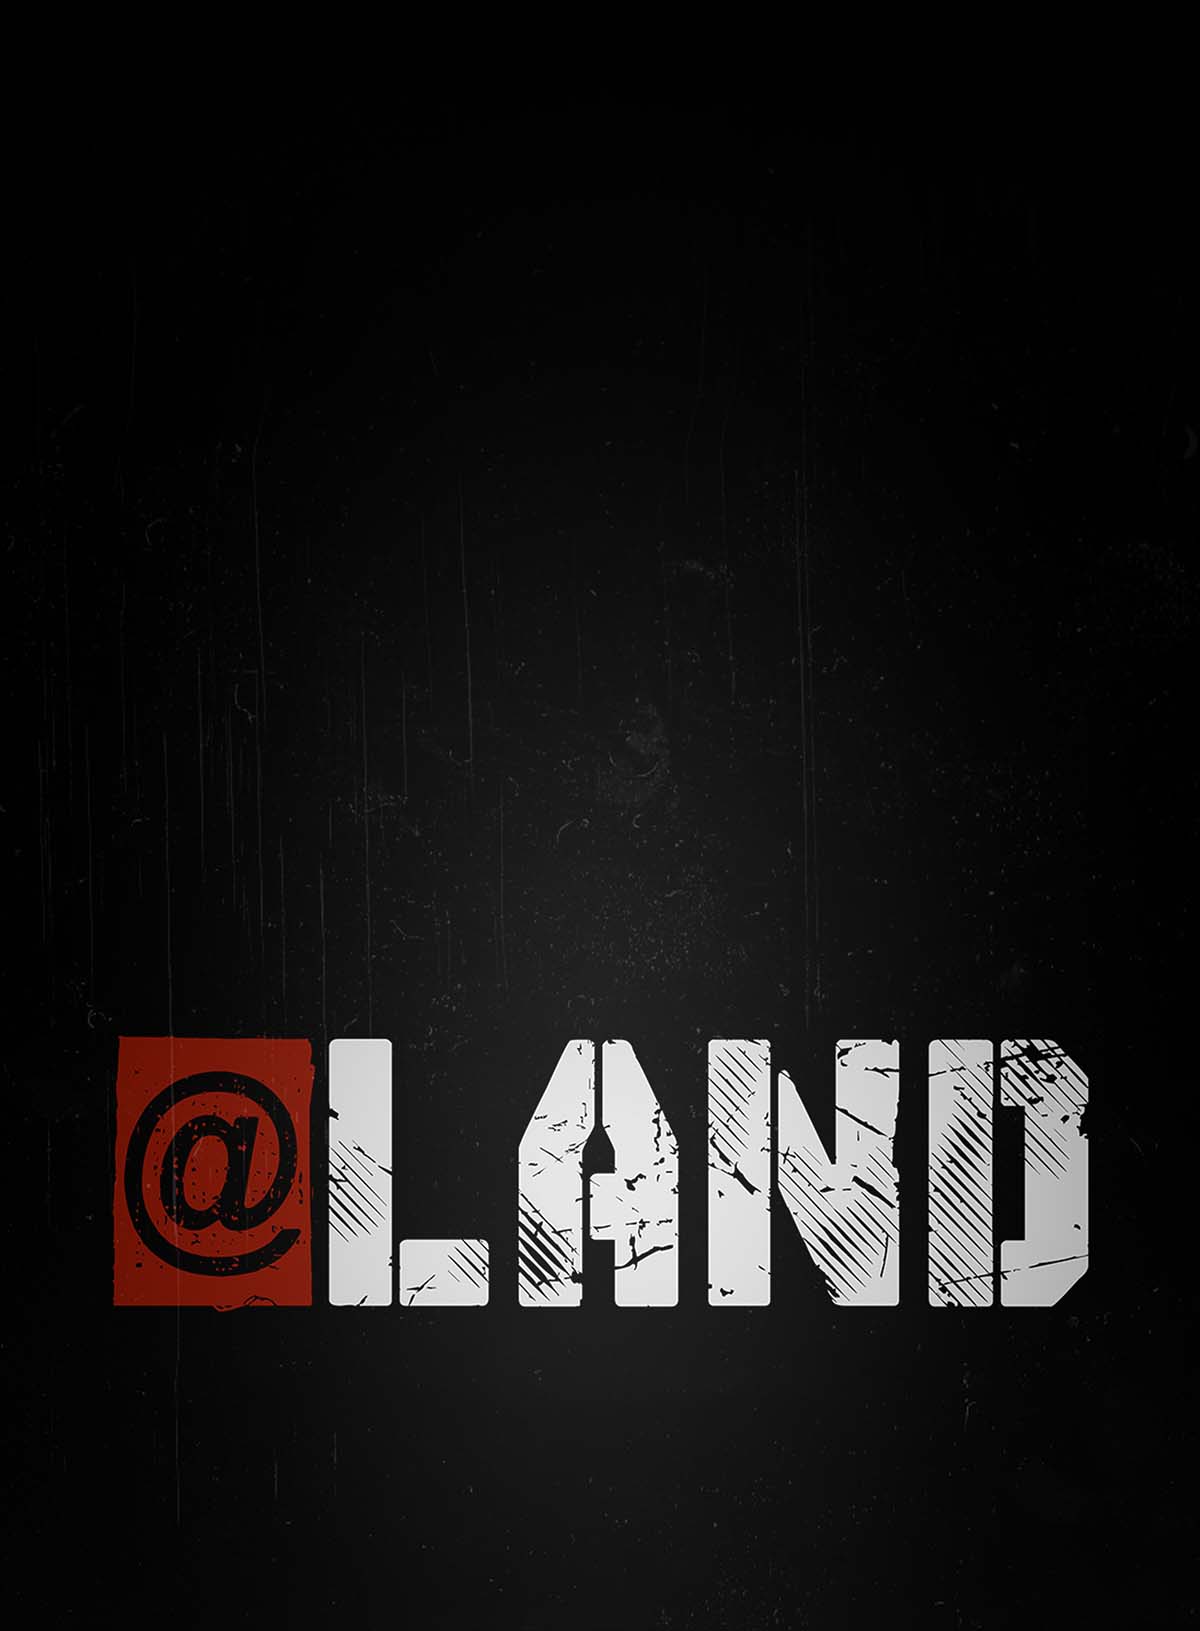 affiche @land par mad films société de production de films et de séries